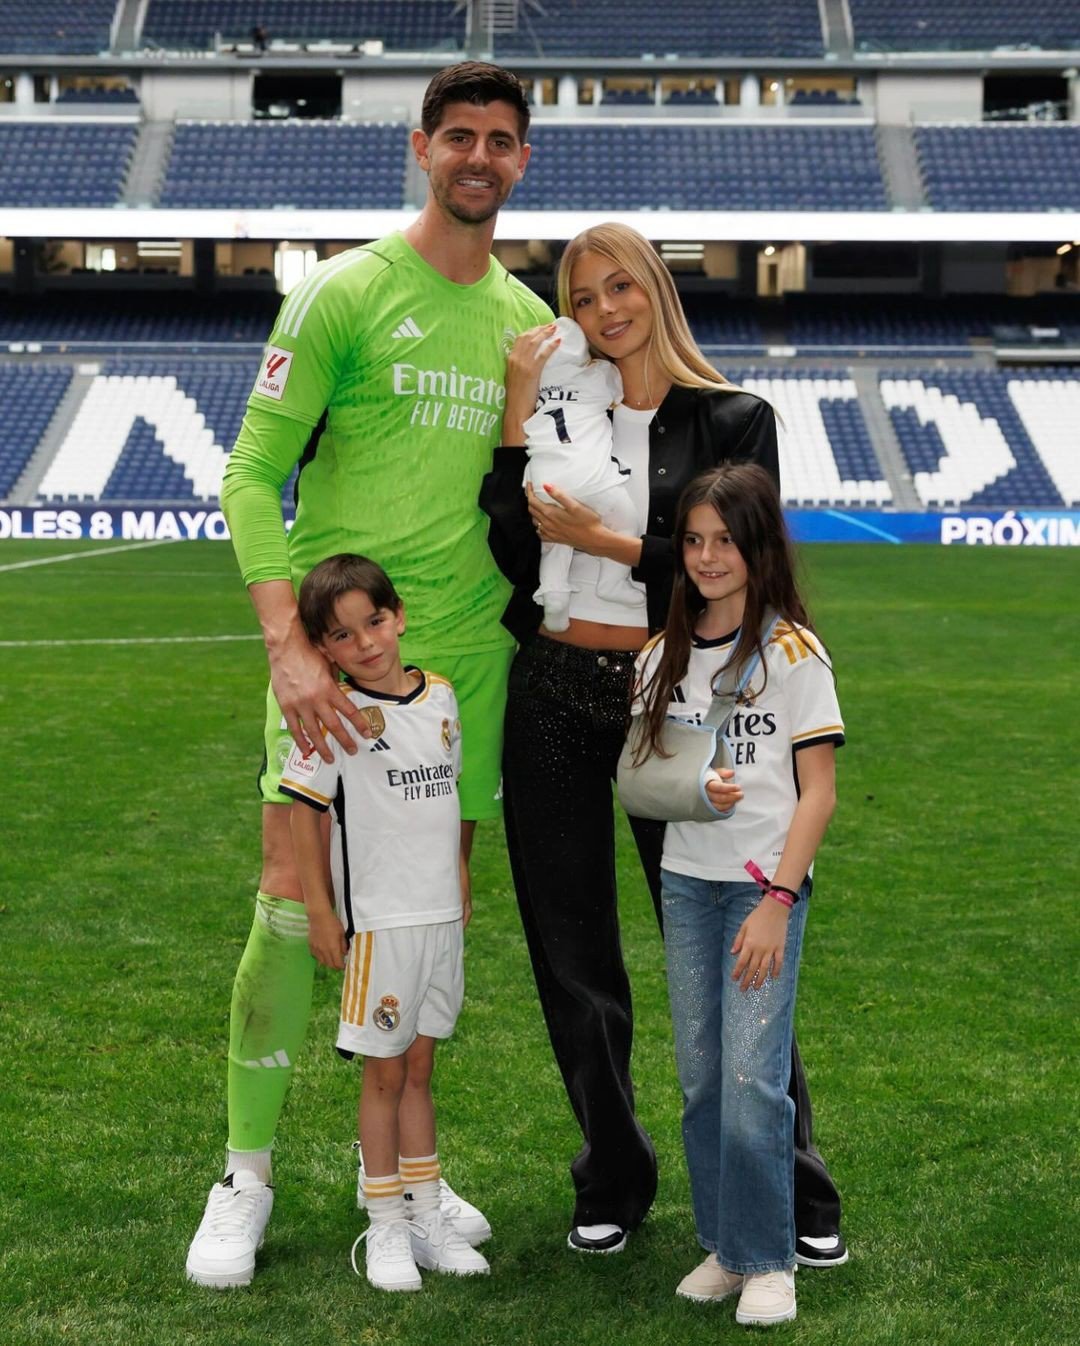 Mishel Gerzig là vợ Thibaut Courtois,
thủ môn của Real Madrid. Hai người yêu nhau từ năm 2021 và chính
thức trở thành vợ chồng trong đám cưới xa hoa ở miền nam nước Pháp.
Cặp đôi chào đón con đầu lòng vào đầu tháng 4. Thibaut còn có hai
con riêng.